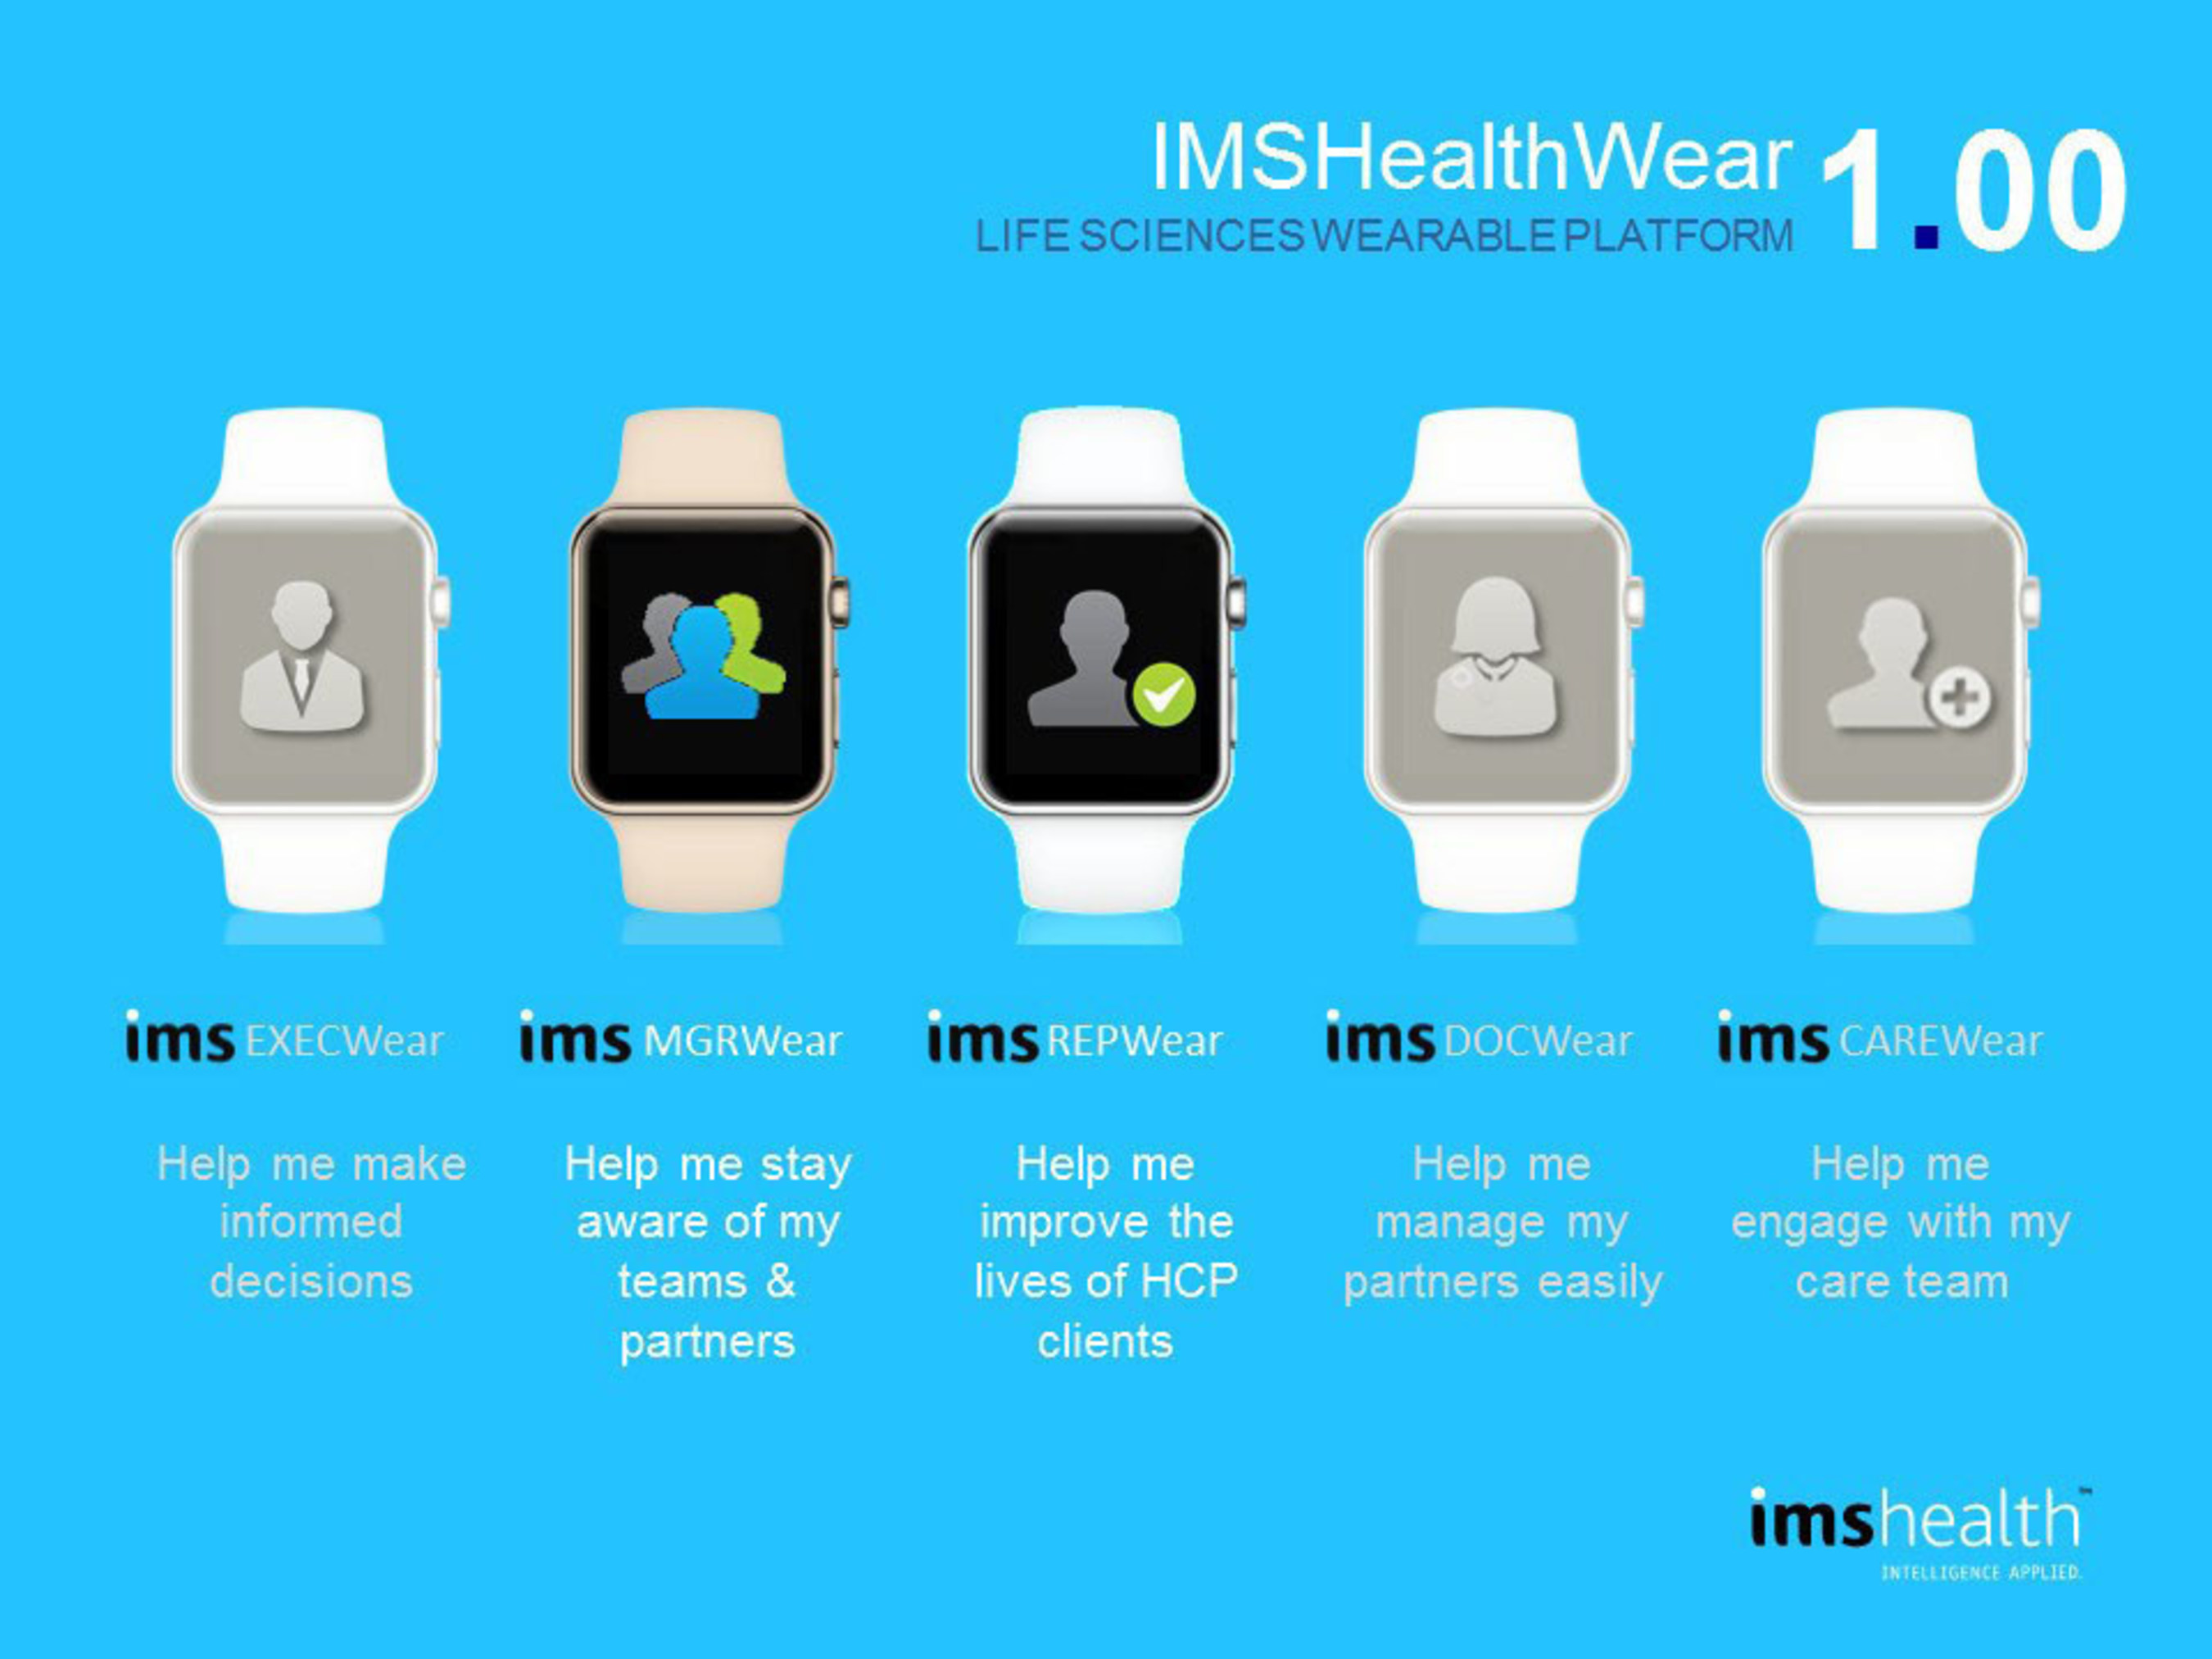 Screen shots of IMS HealthWear App 